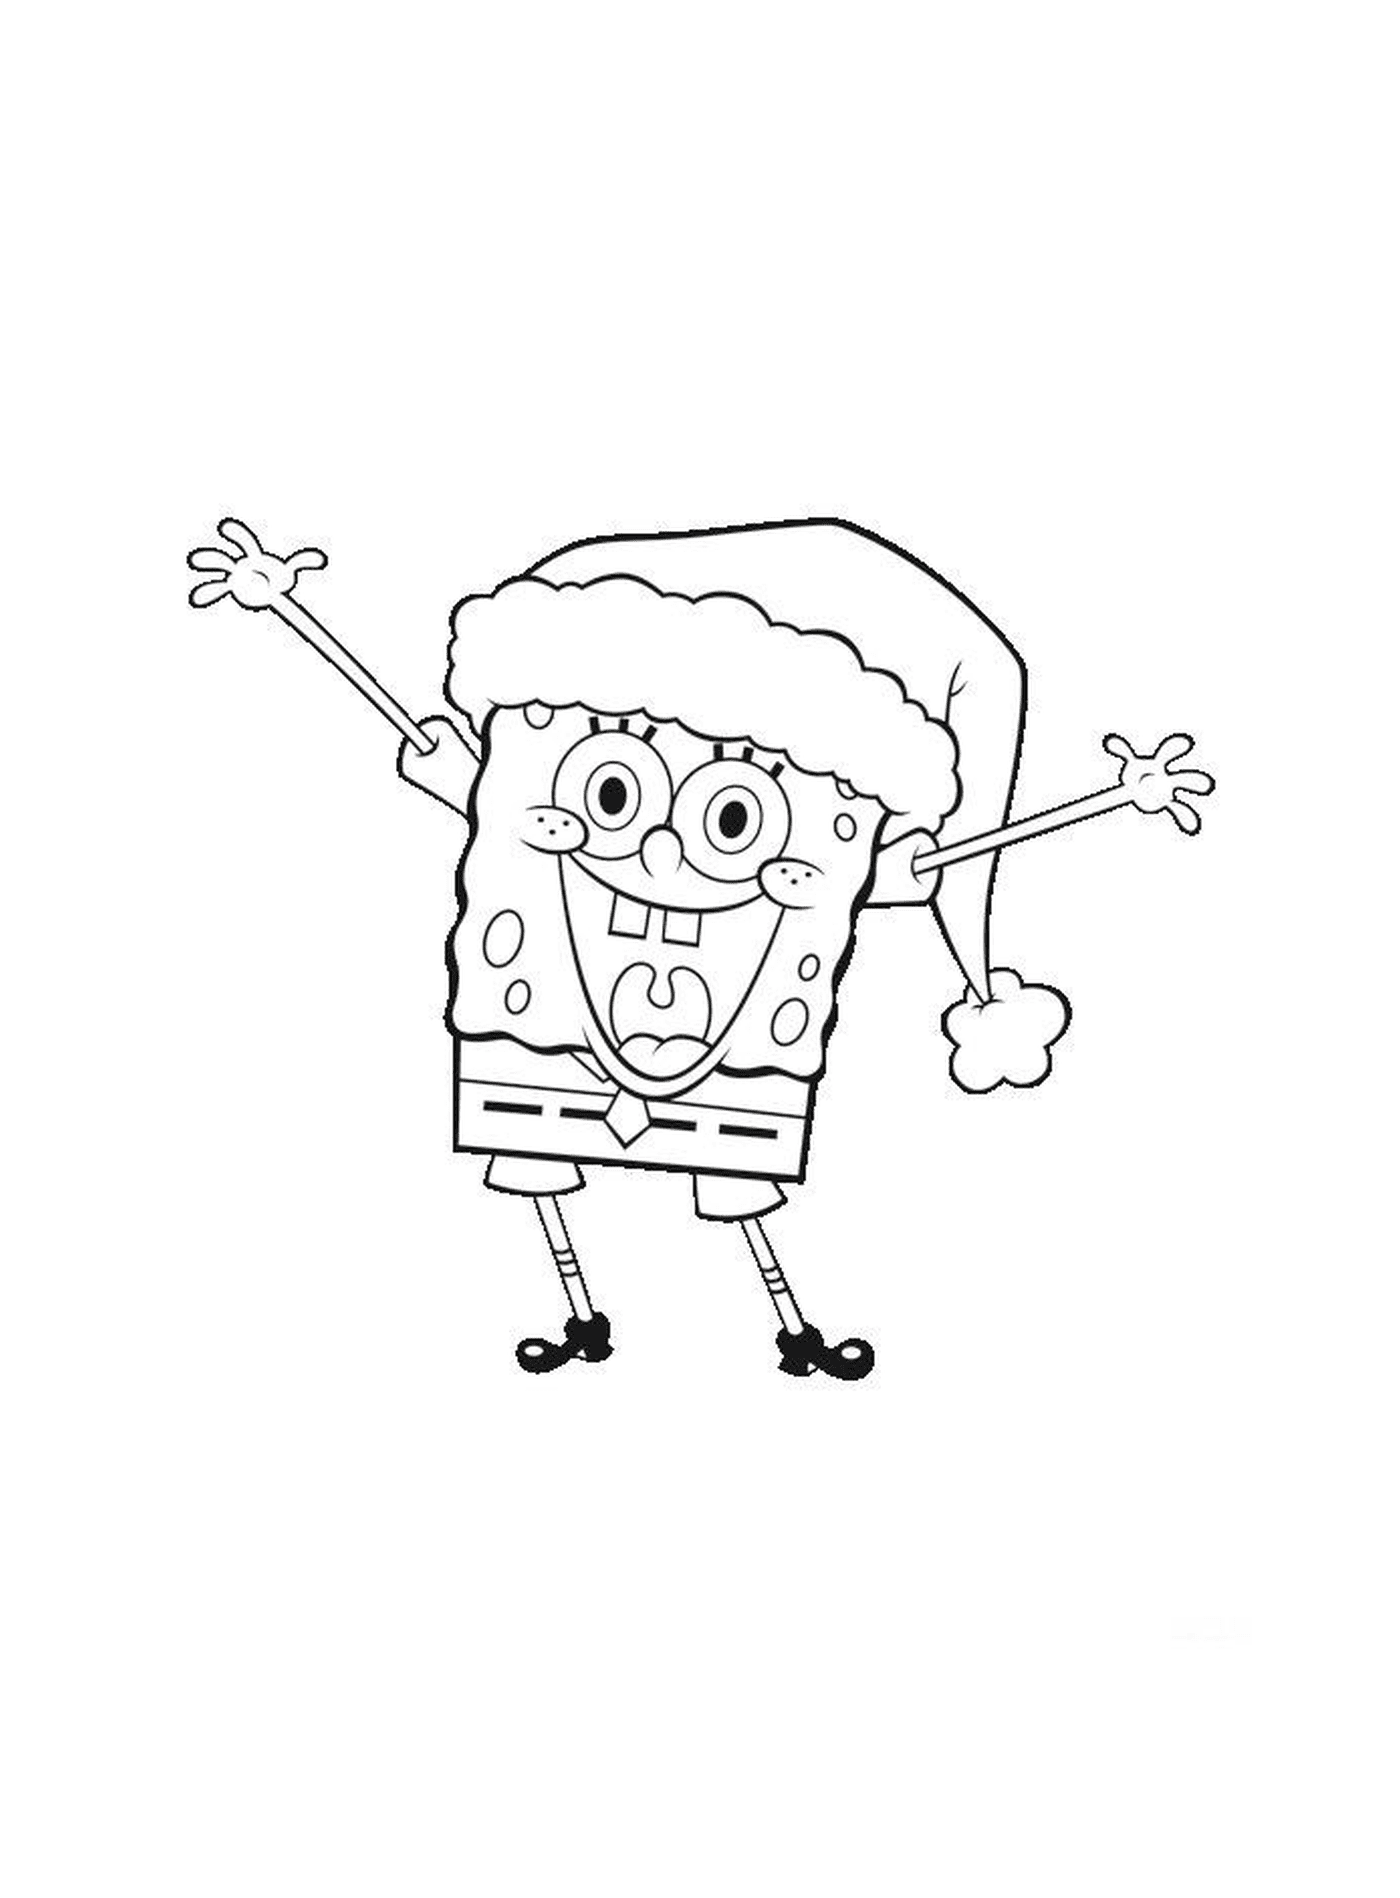  A Spongebob wearing a Santa's hat 